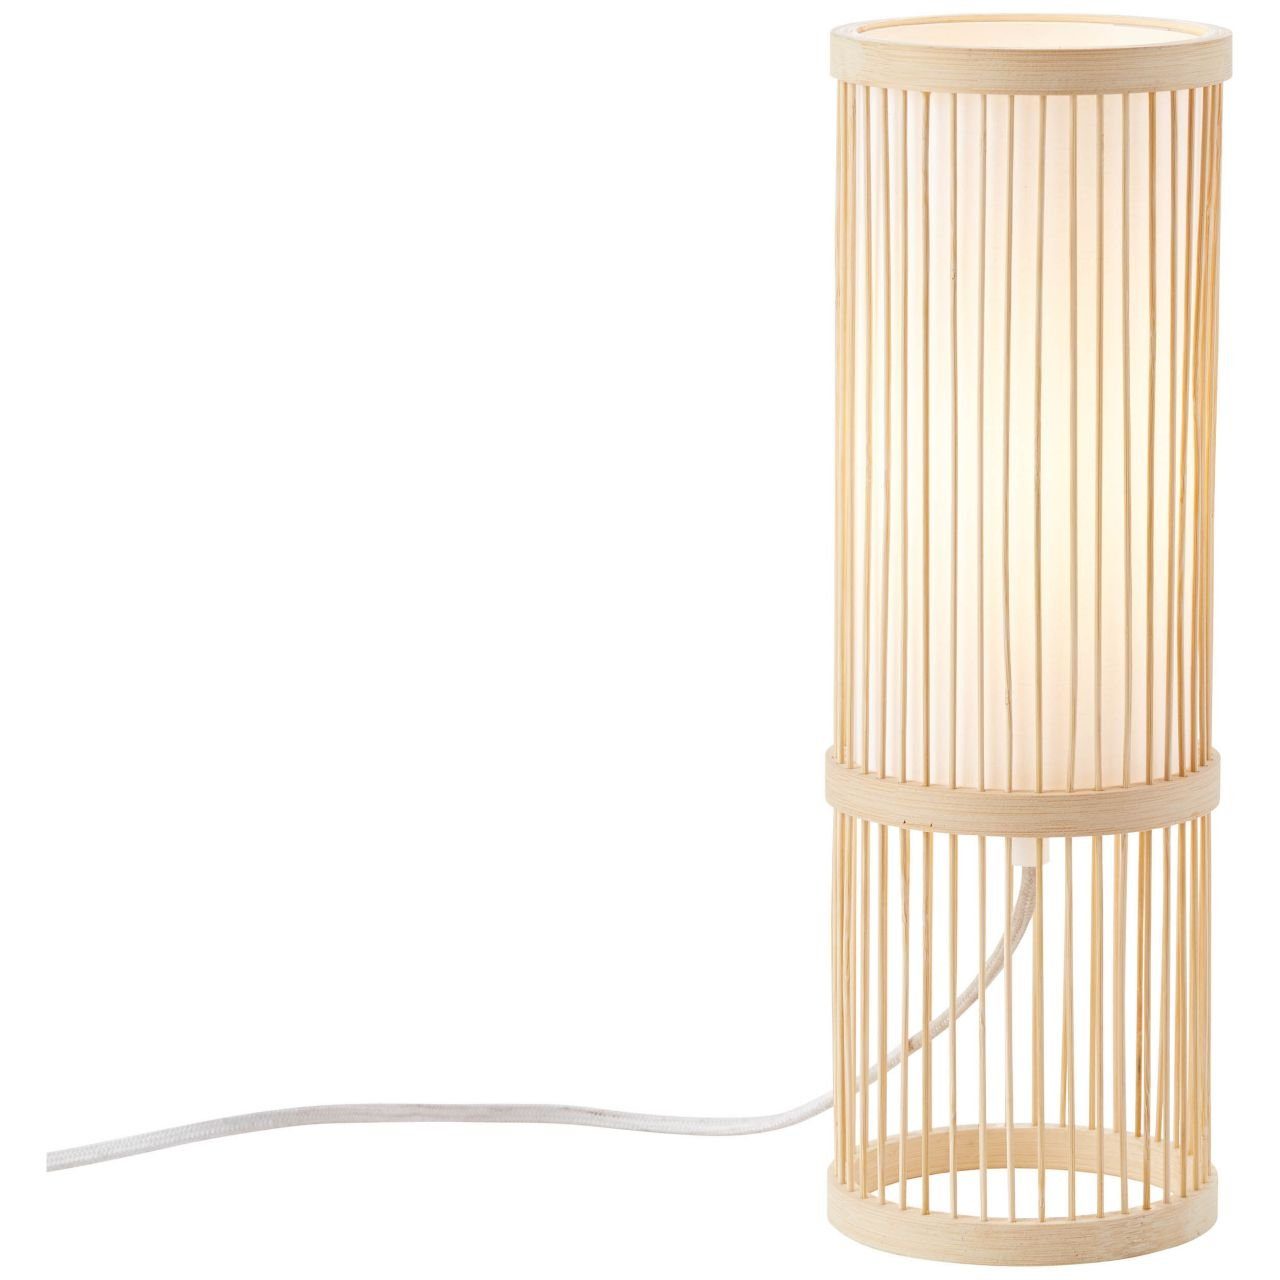 Tischleuchte 1x g.f. E27, Nori Nori, Brilliant natur/weiß A60, 40W, Lampe Normallamp Tischleuchte